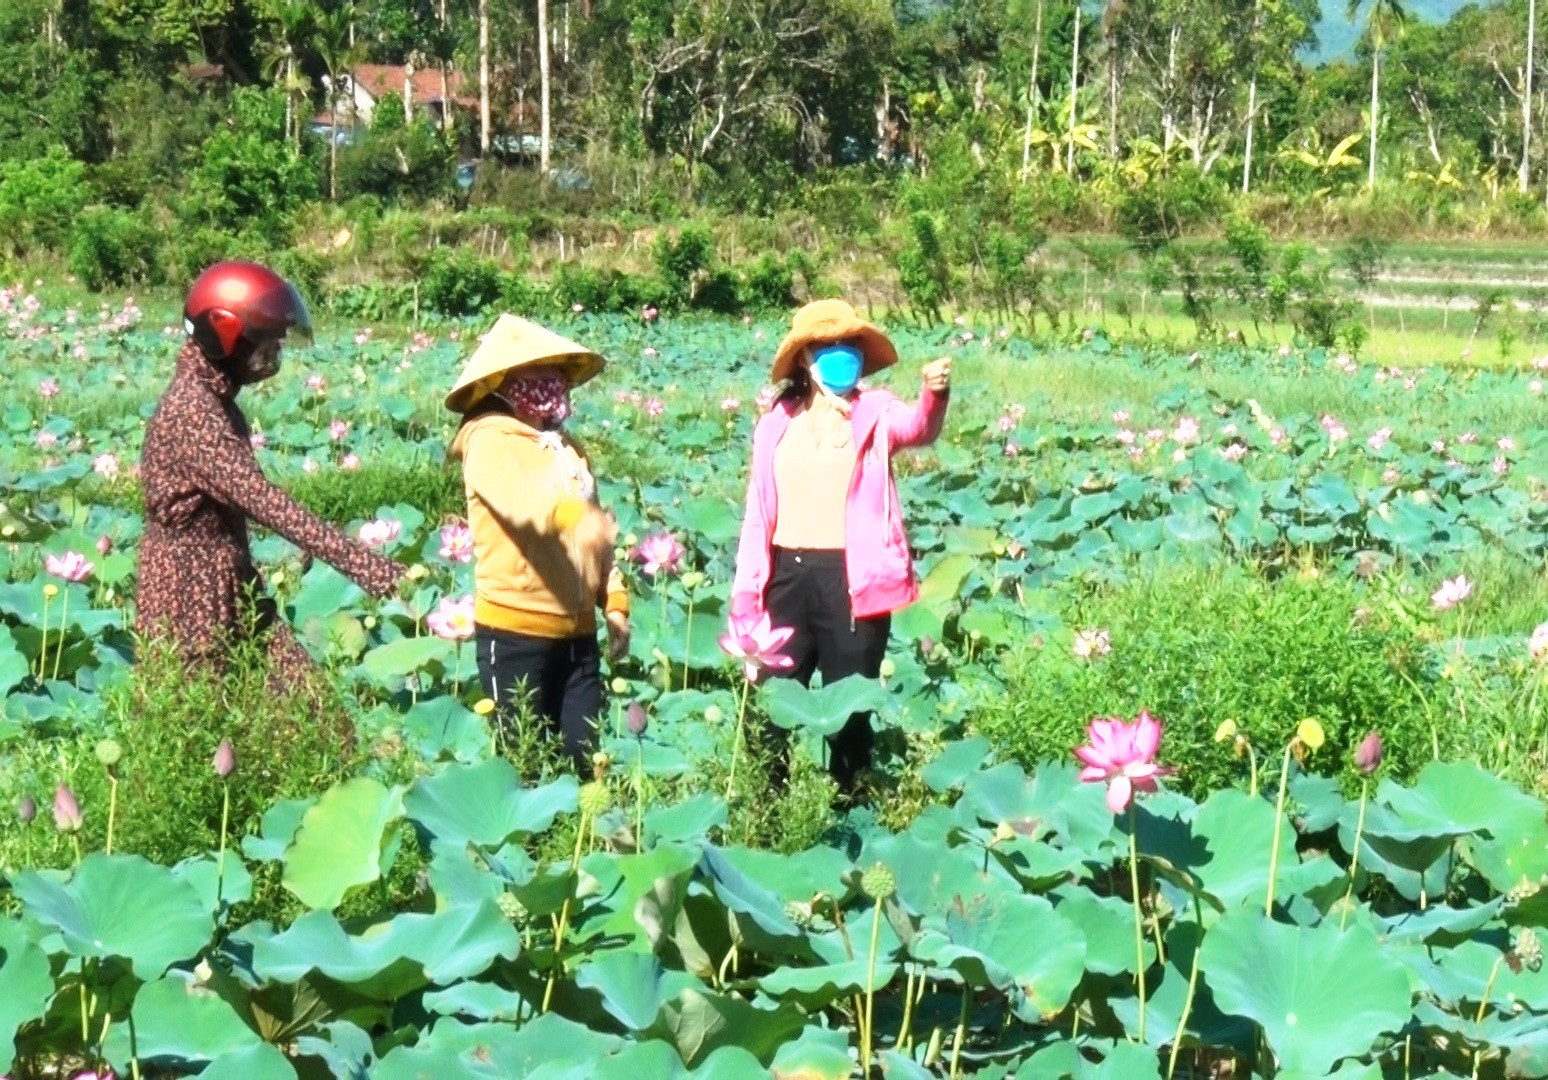 Mô hình trồng sen trên đất lúa kém hiệu quả được nhân rộng ra một số địa phương ở Nông Sơn. Ảnh: P.N